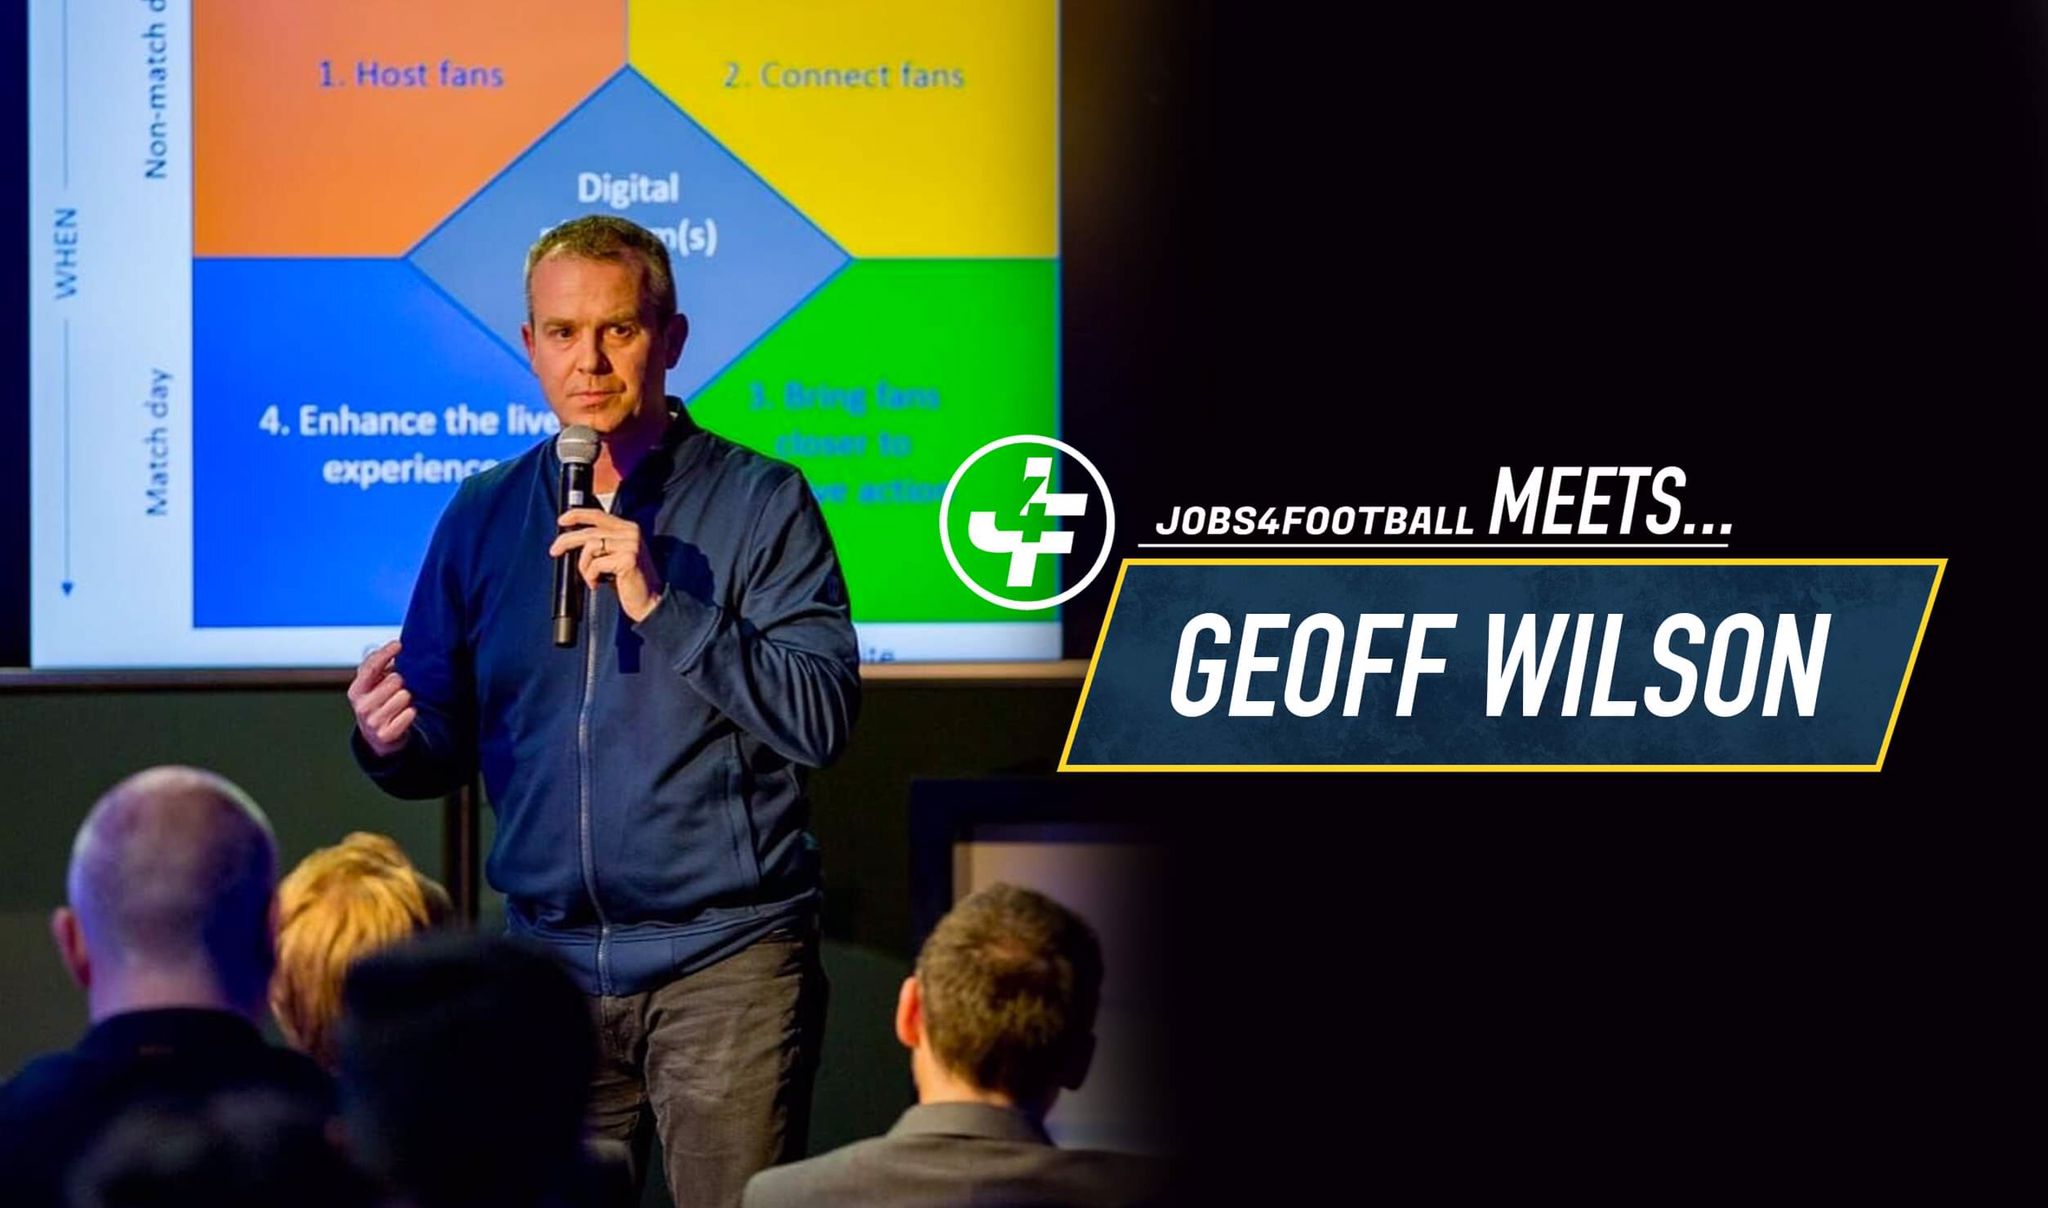 Jobs4Football meets Geoff Wilson